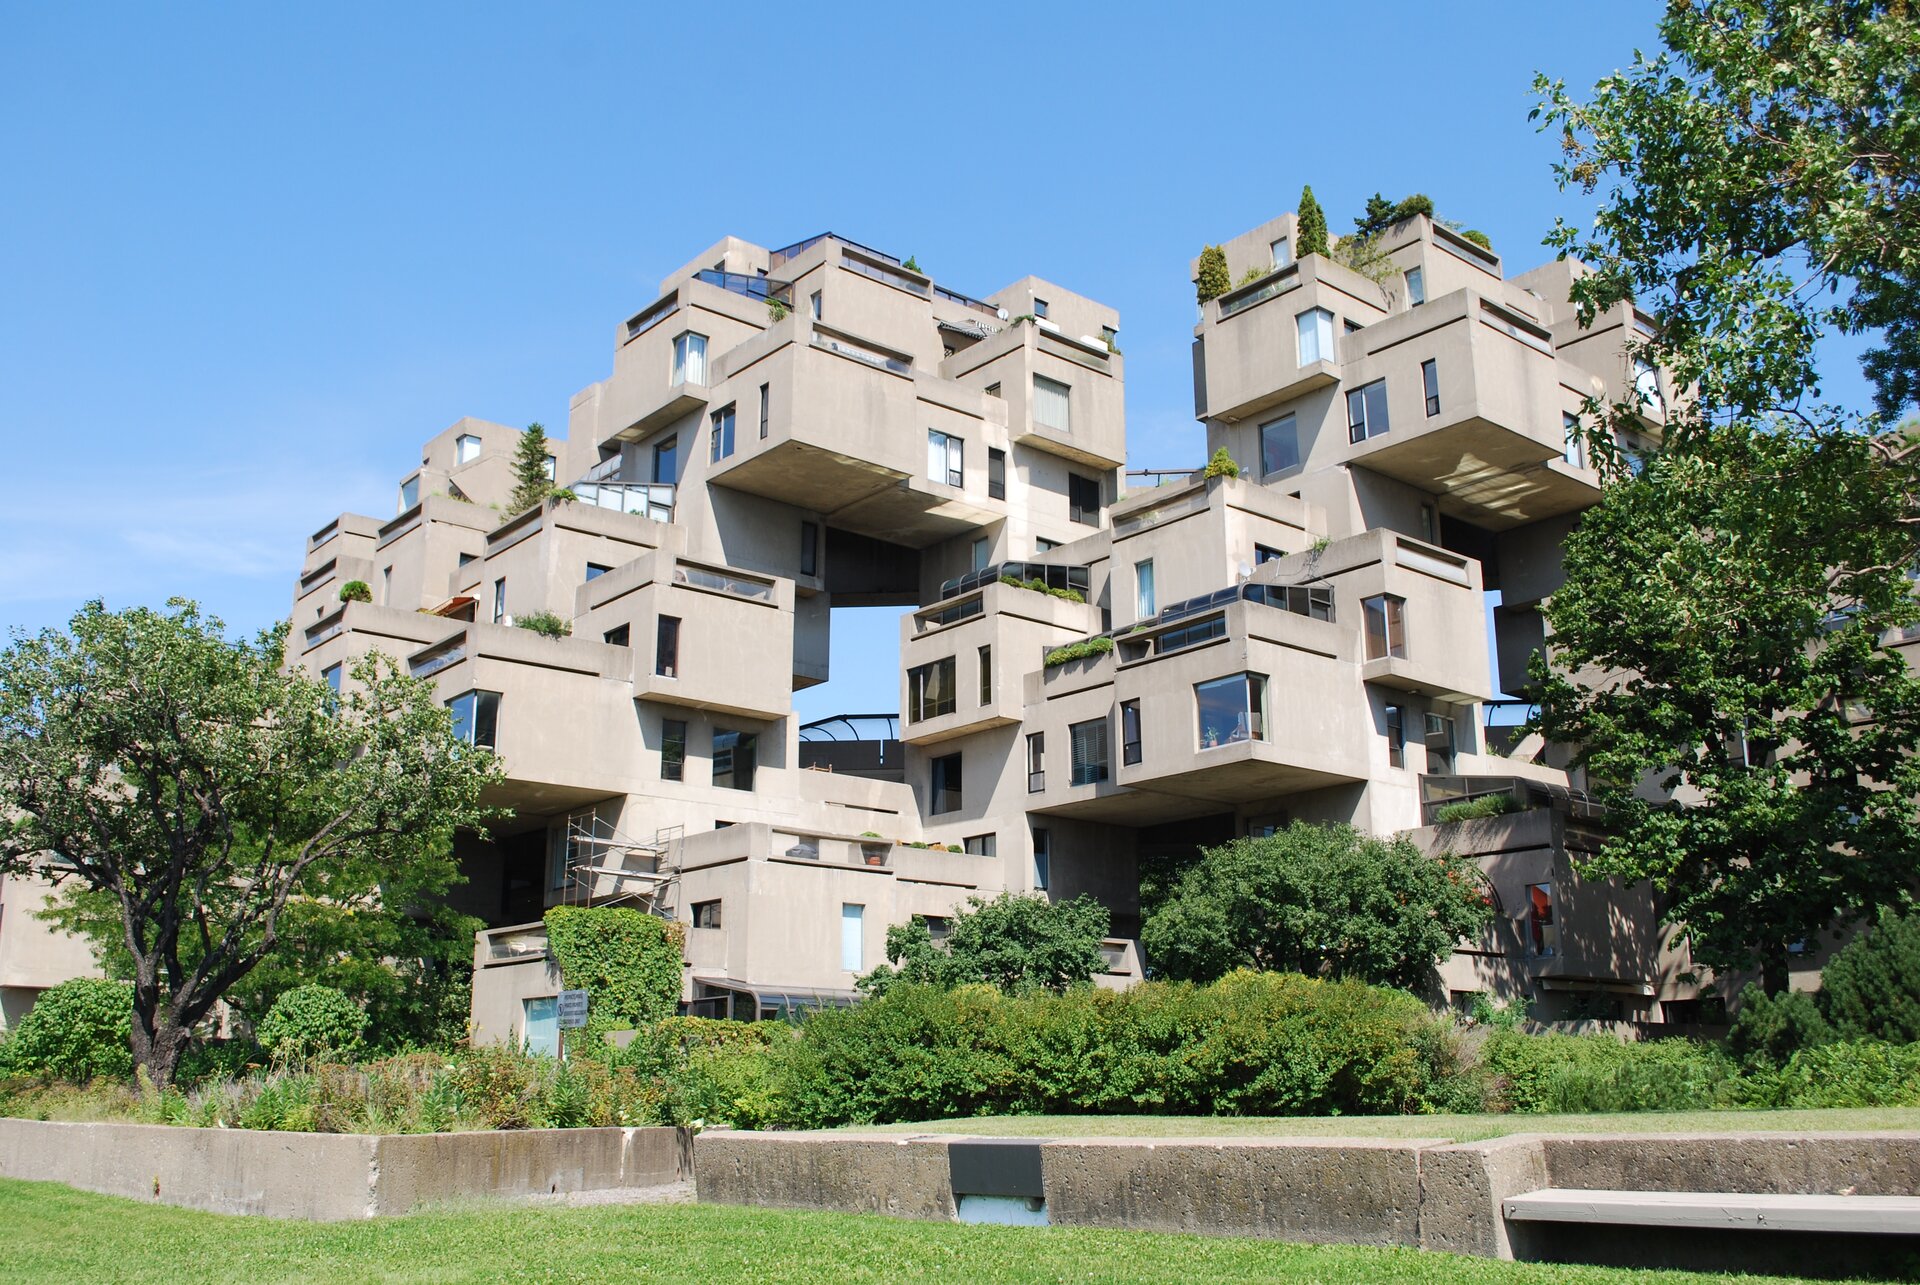 Ilustracja przedstawia fragment Habitat 67. Jest to kompleks mieszkalny w Montrealu w Kanadzie, wzniesiony na wystawę światową w 1967 roku, gdzie pełnił rolę jednego z pawilonów. Dookoła budowli znajdują się liczne drzewa oraz krzewy.